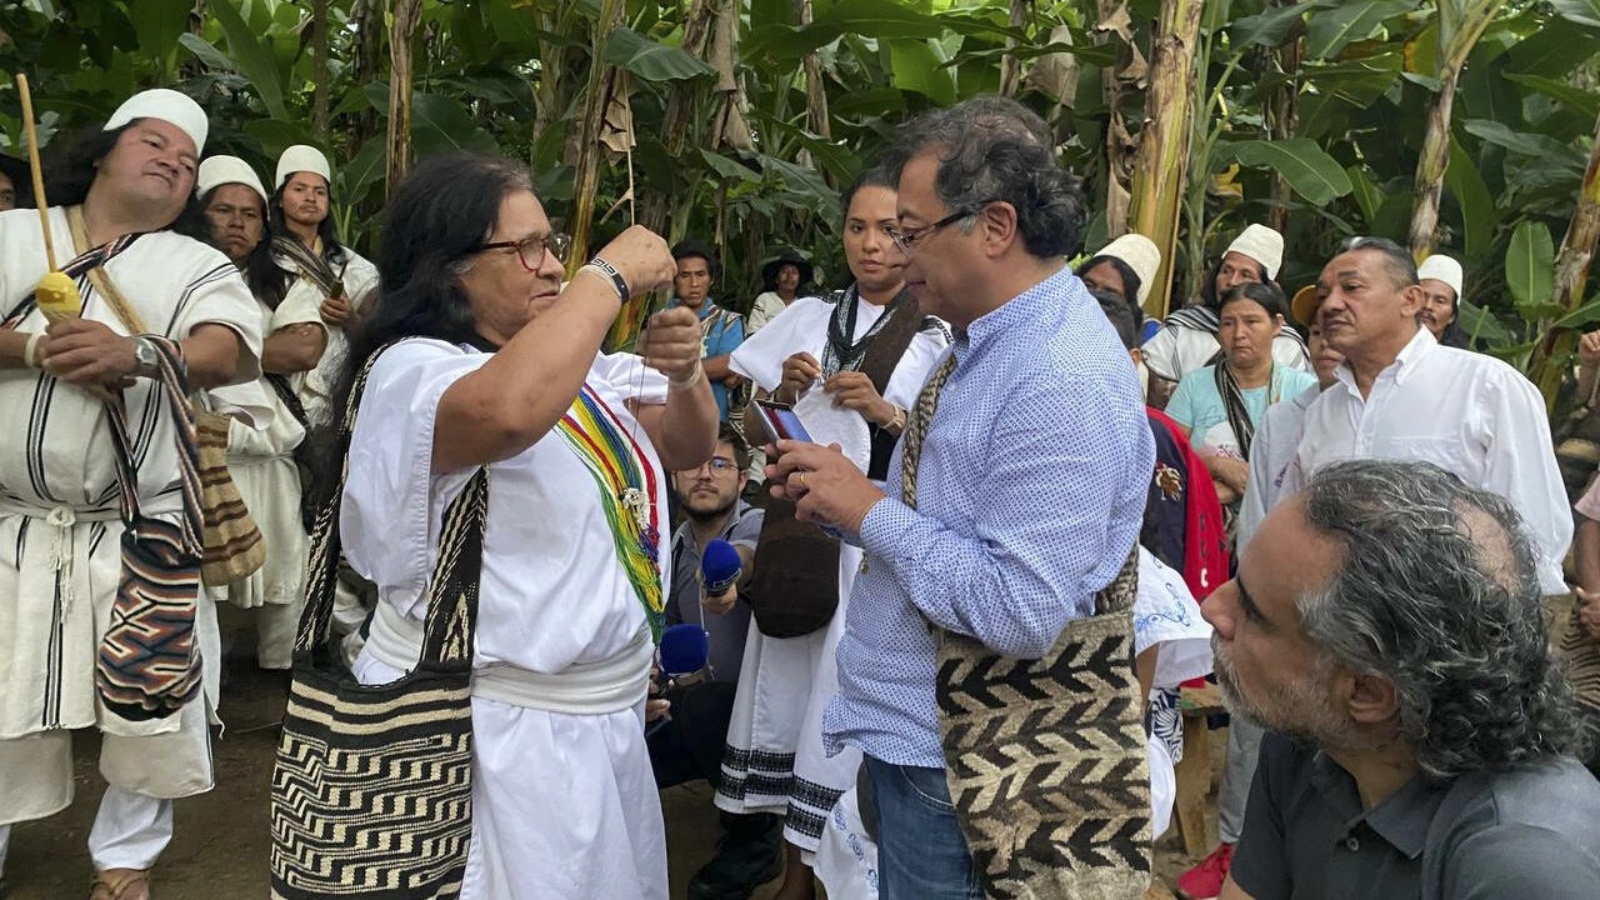 المرشح غوستافو بيترو في لقاء مع السكان الاصليين في كولومبيا في 18 يونيو 2022 